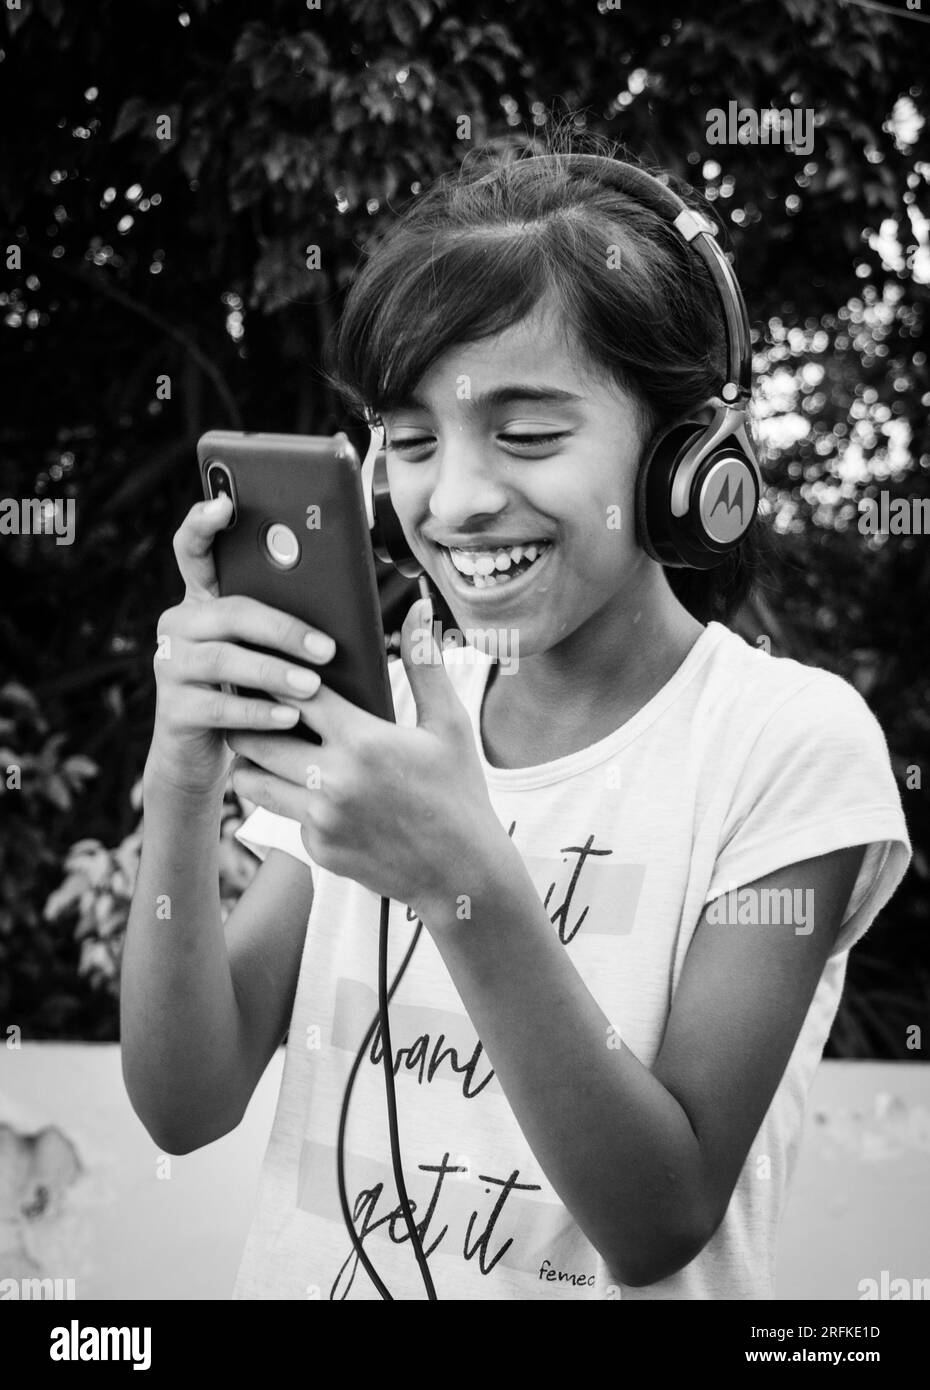 14 ottobre 2022 Uttarakhand, India. La giovane ragazza si sintonizza con piacere sulla musica sul suo smartphone indossando le cuffie. Pura gioia nel ritmo. Foto Stock